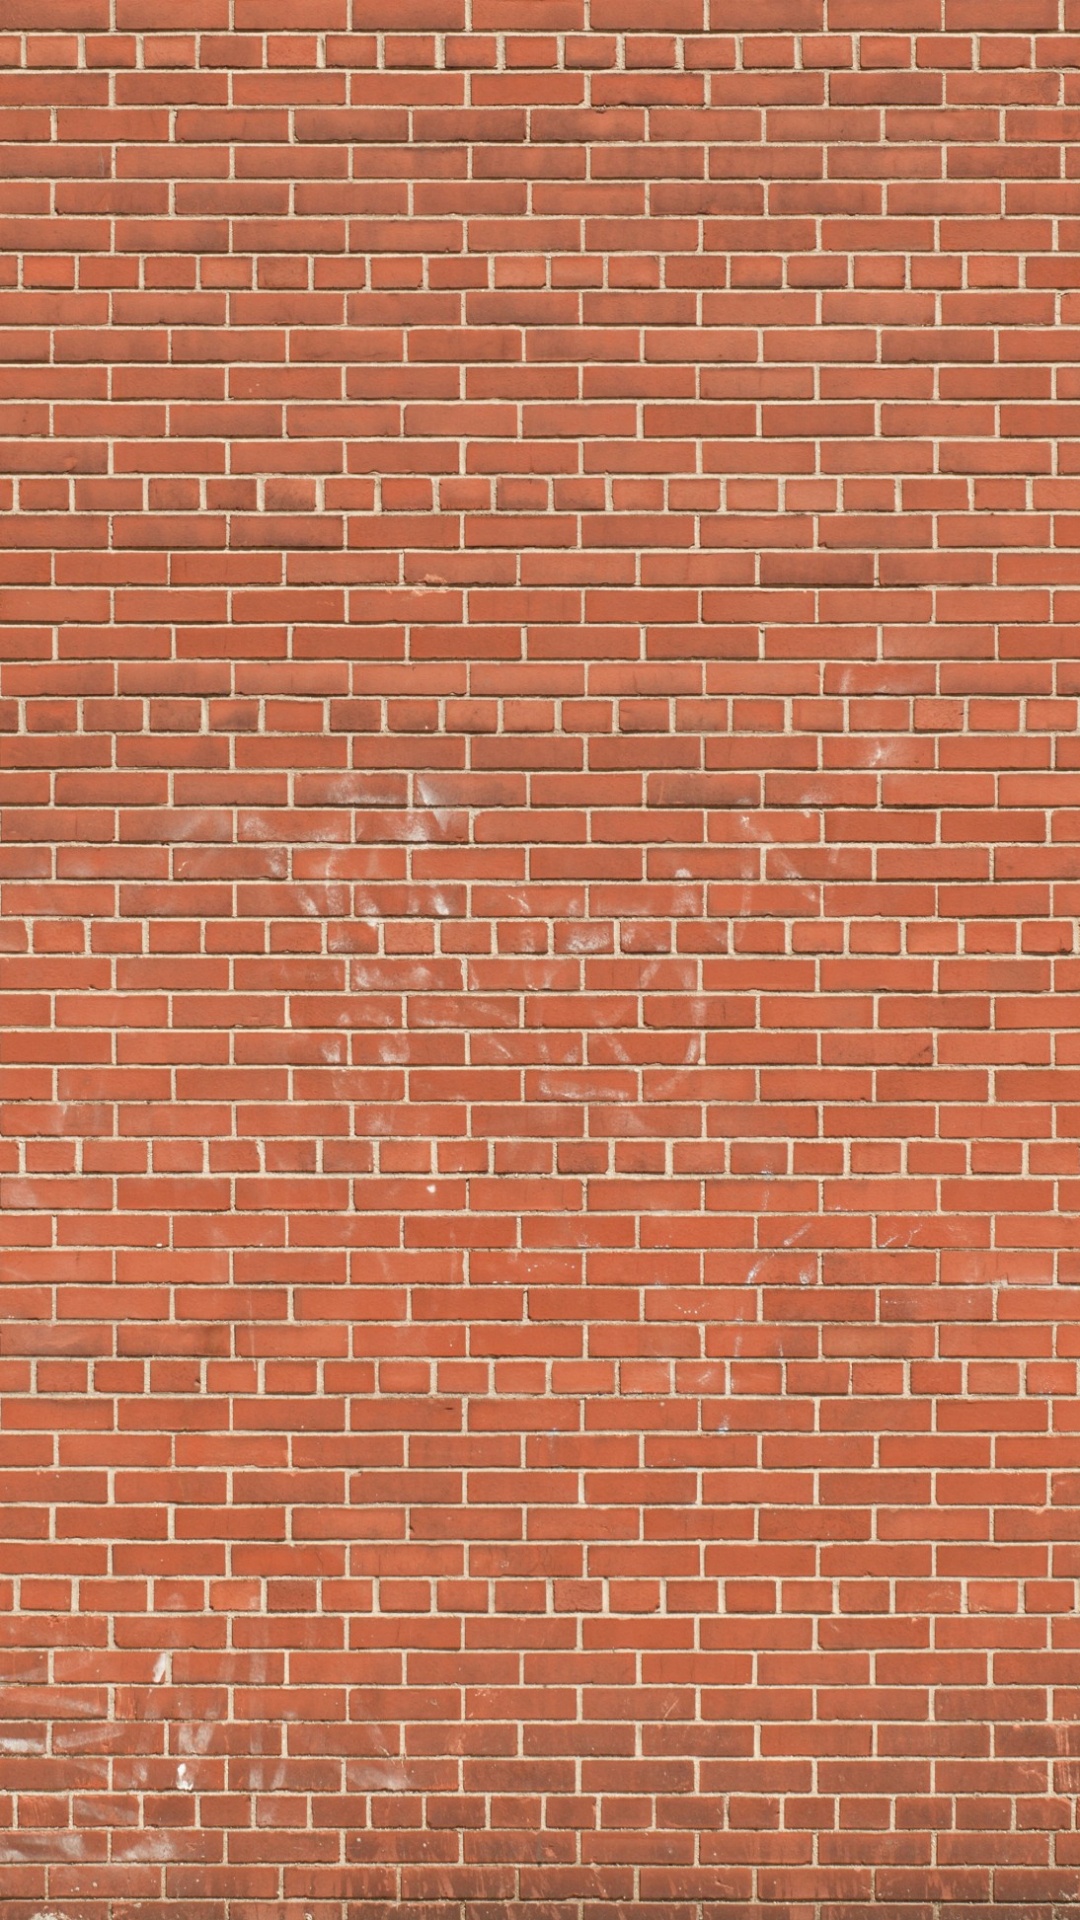 Mur de Briques Brunes Pendant la Journée. Wallpaper in 1080x1920 Resolution